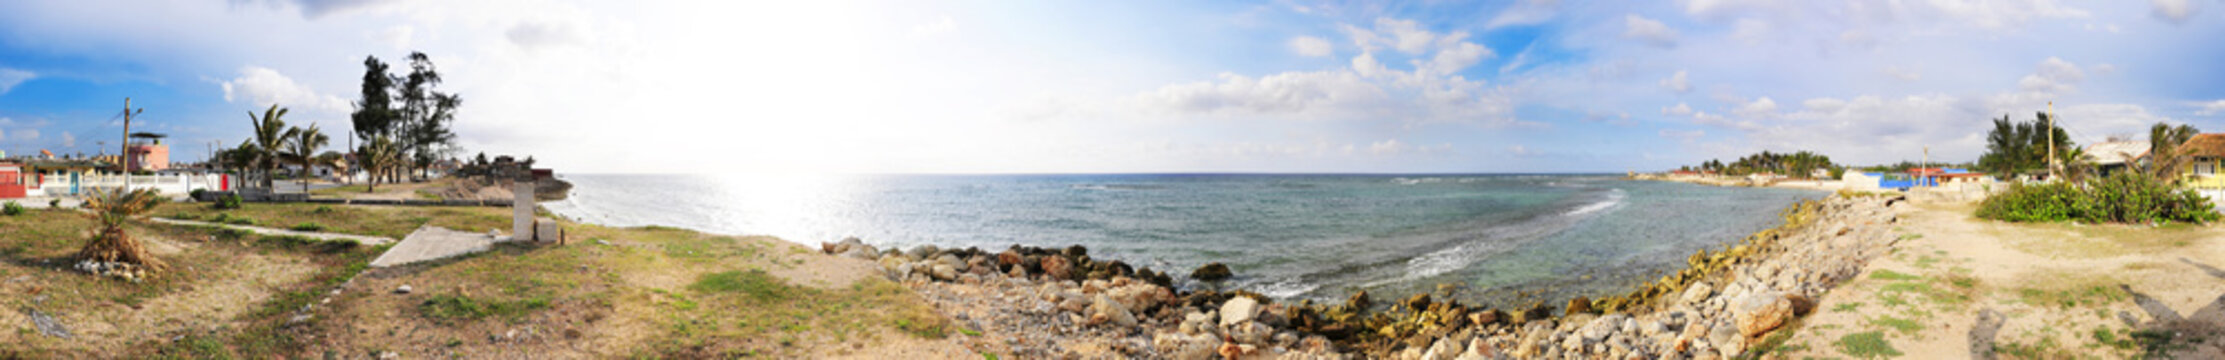 Santa fe beach panorama, cuba